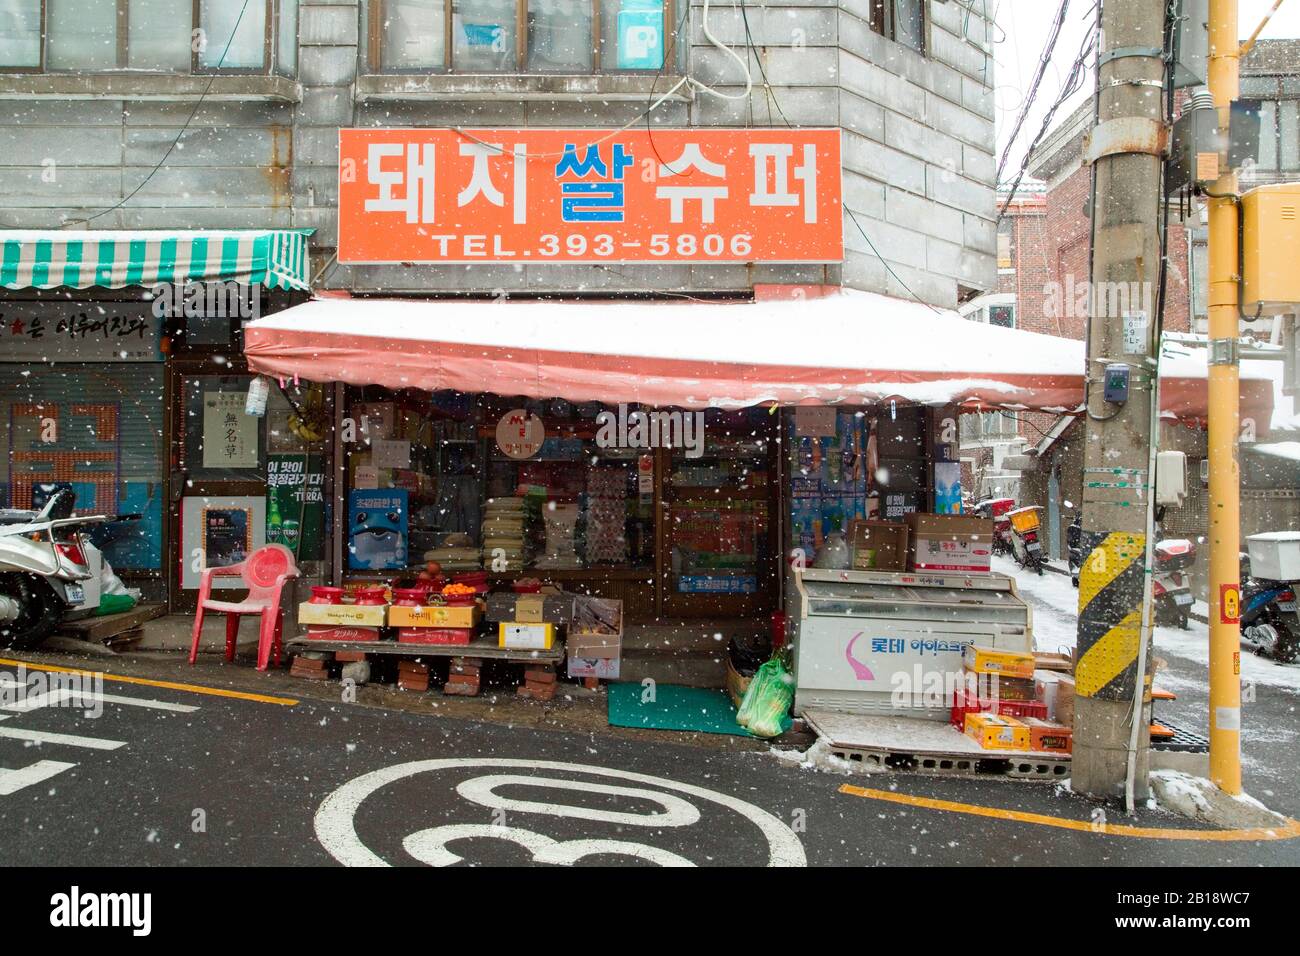 Der Dwejissal Supermarkt, 17. Februar 2020: Der Dwejissal Supermarkt, der Woori Supermarkt im koreanischen Film "Parasite" in Seoul, Südkorea genannt wird. Der Supermarkt ist ein ikonischer Drehort des Oscar-prämierten Films "Parasite" unter der Regie von Bong Joon-Ho. Credit: Lee Jae-Won/AFLO/Alamy Live News Stockfoto